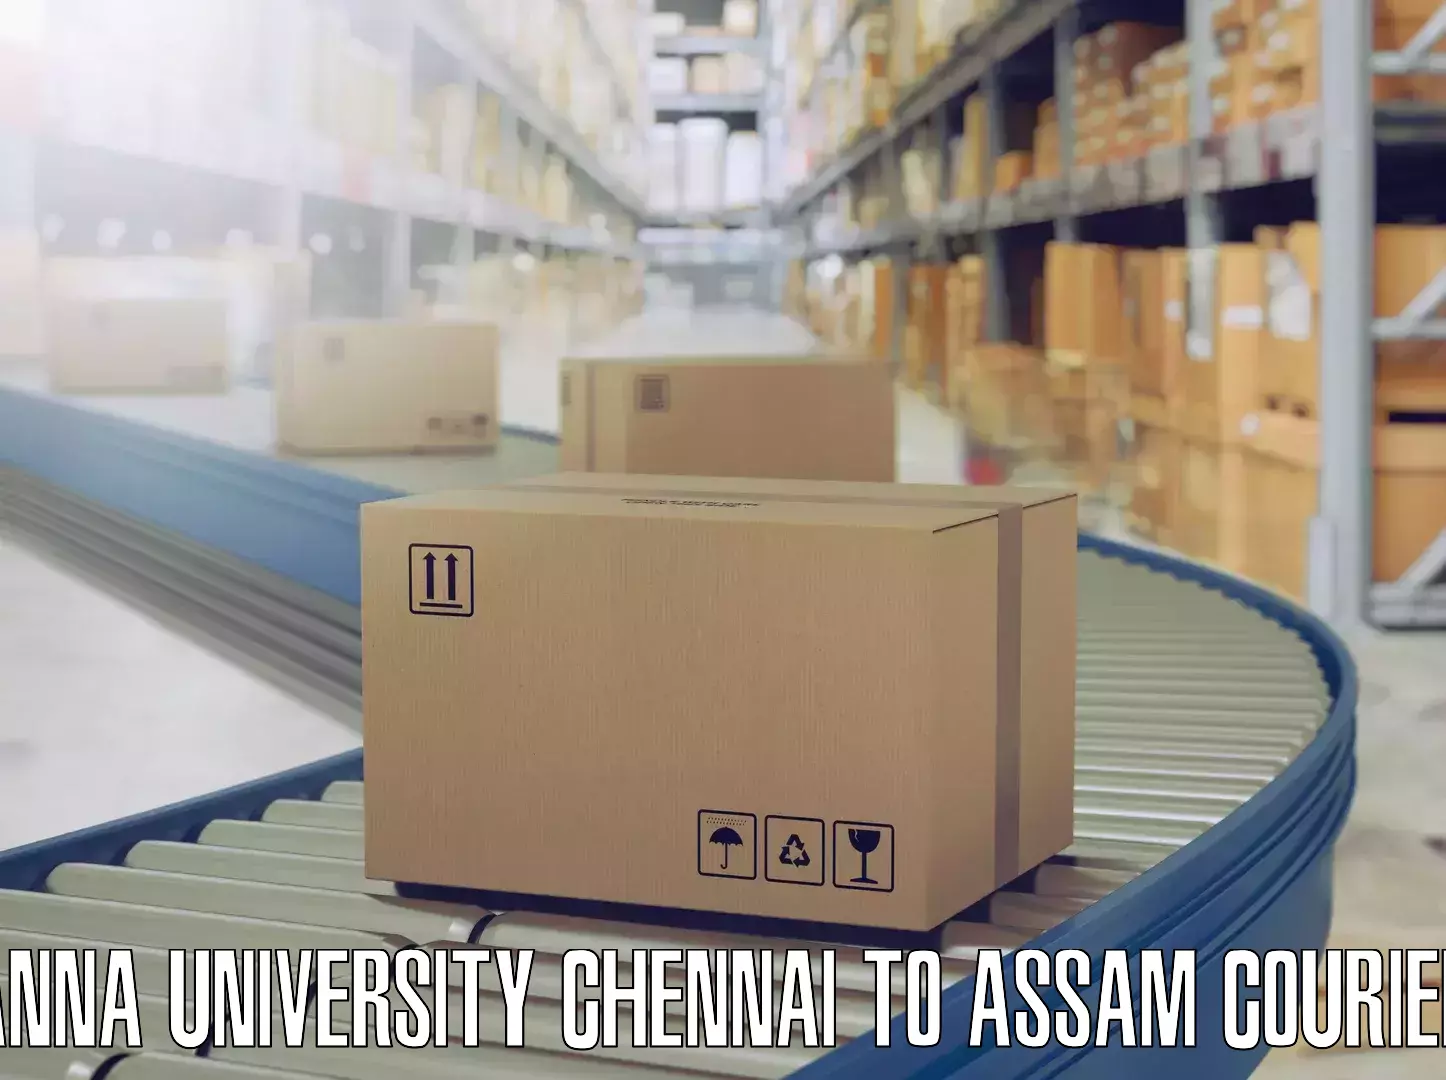 Moving and storage services Anna University Chennai to Rangia